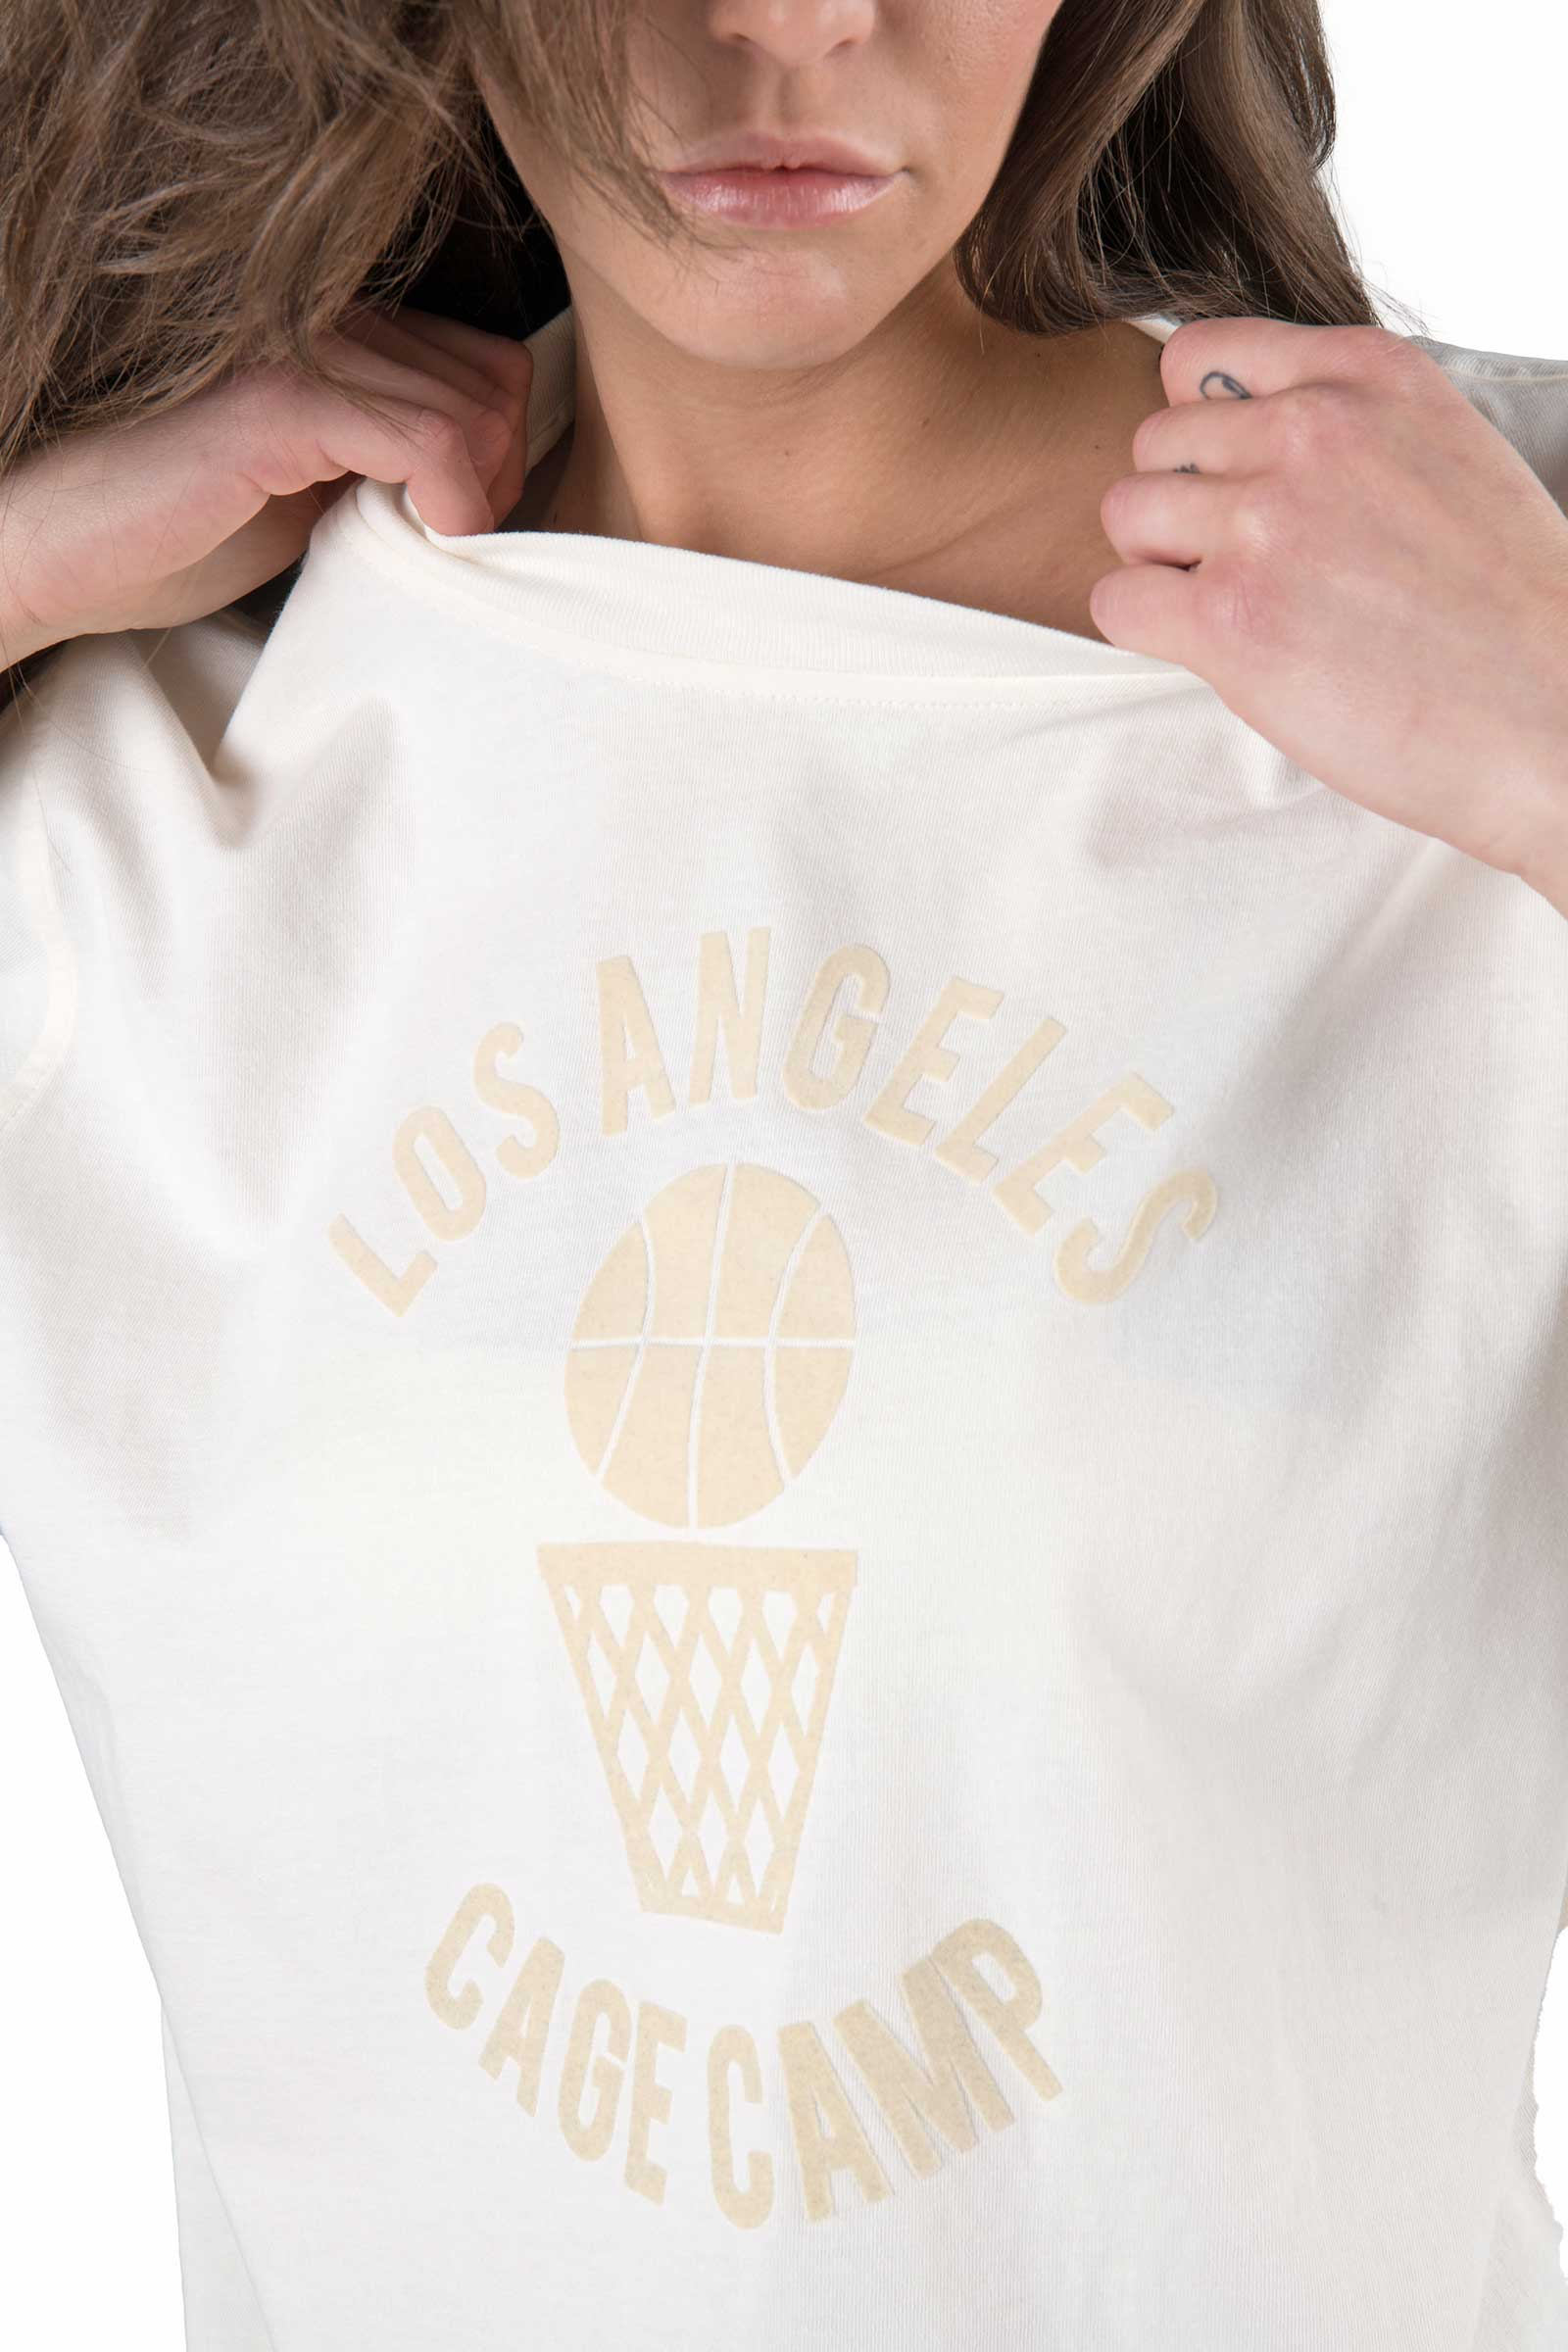 T-SHIRT LOS ANGELES - WHITE - Abbigliamento sportivo | Hydrogen